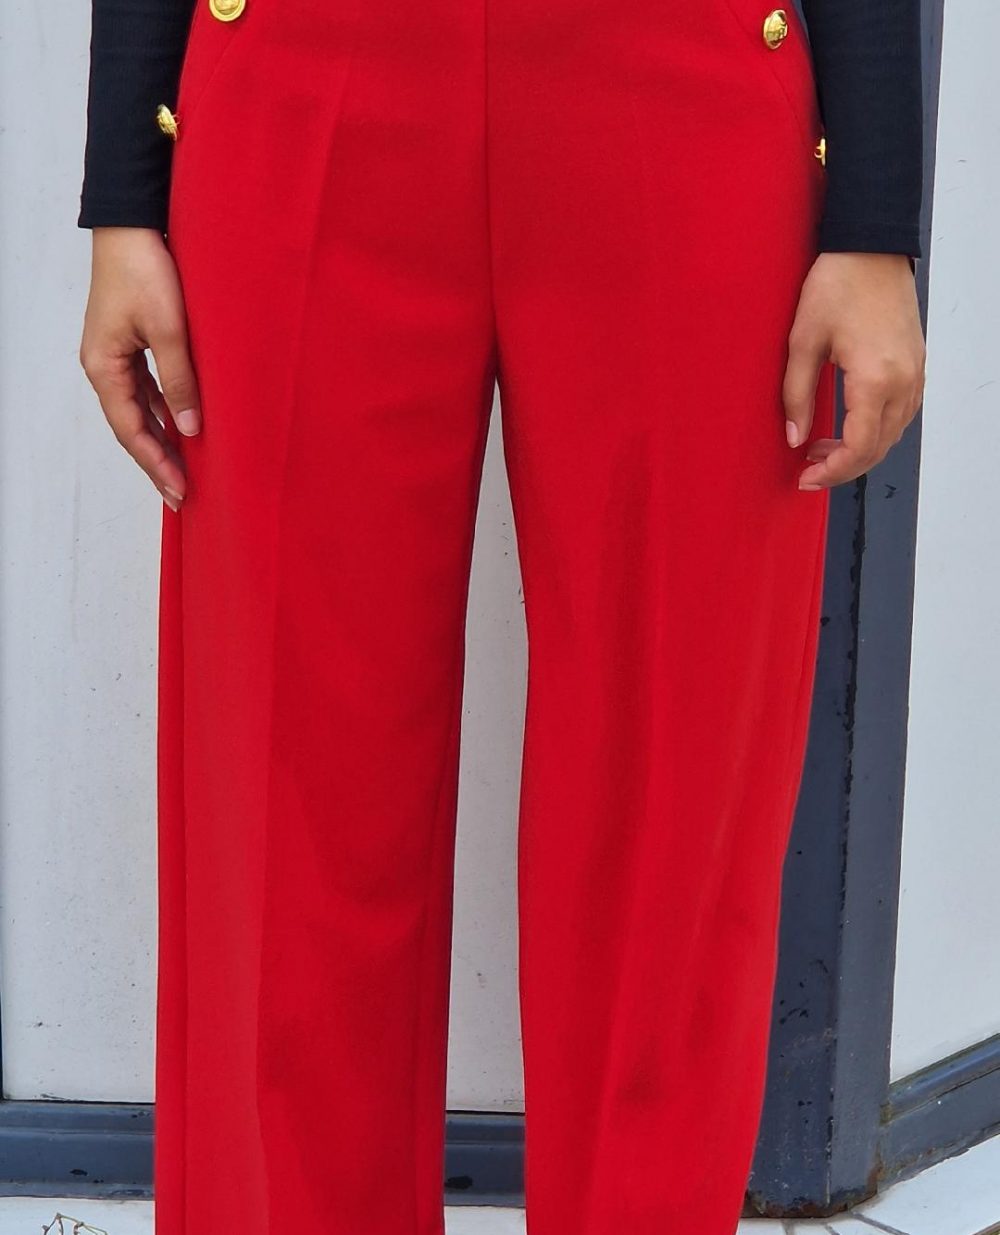 Pantalon à pince rouge vif. Possède des boutons avec motif ancre sur les fausses poches sur le côté.